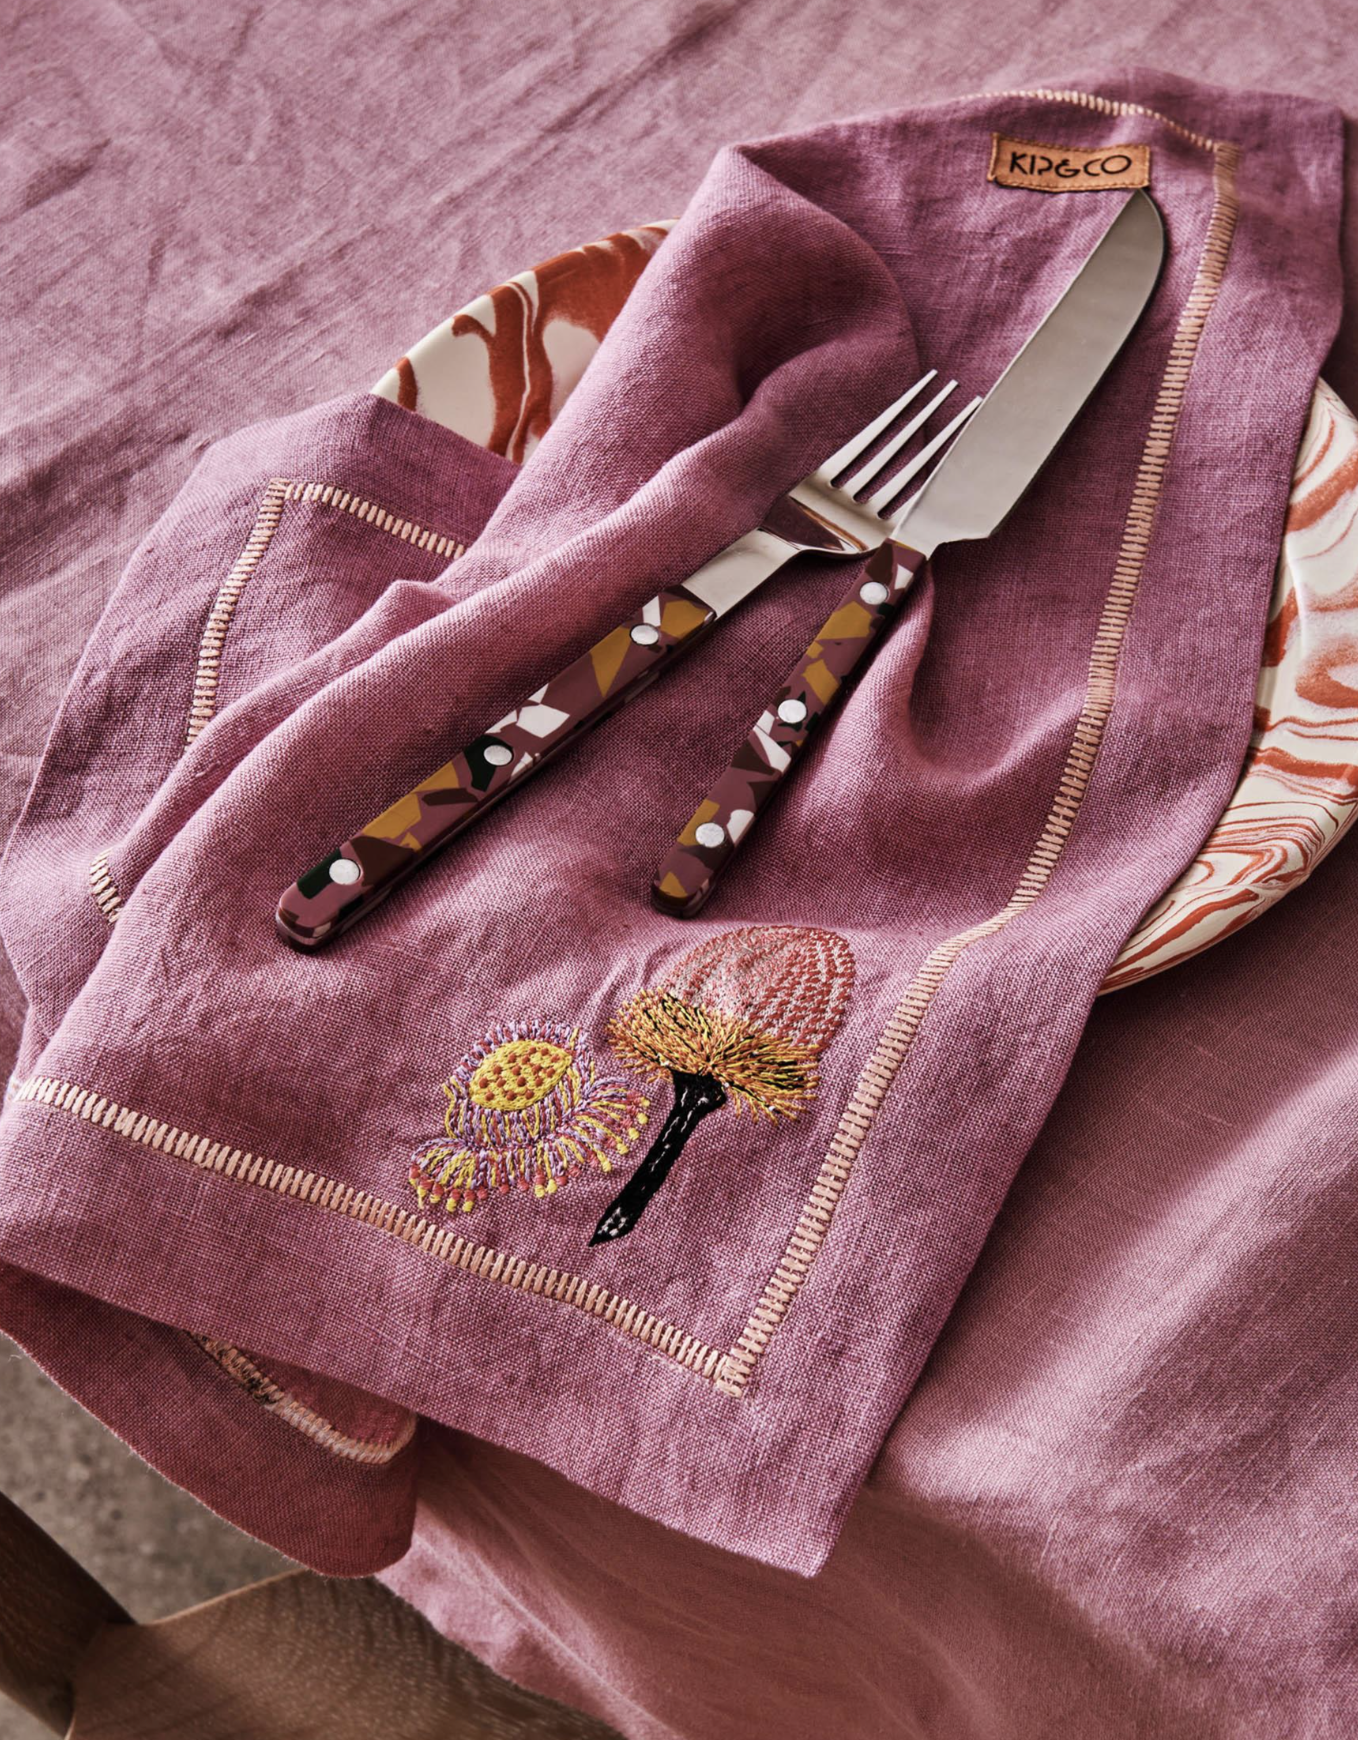 Kip & Co - Bush Native Embroidered 4pc Linen Napkin Set